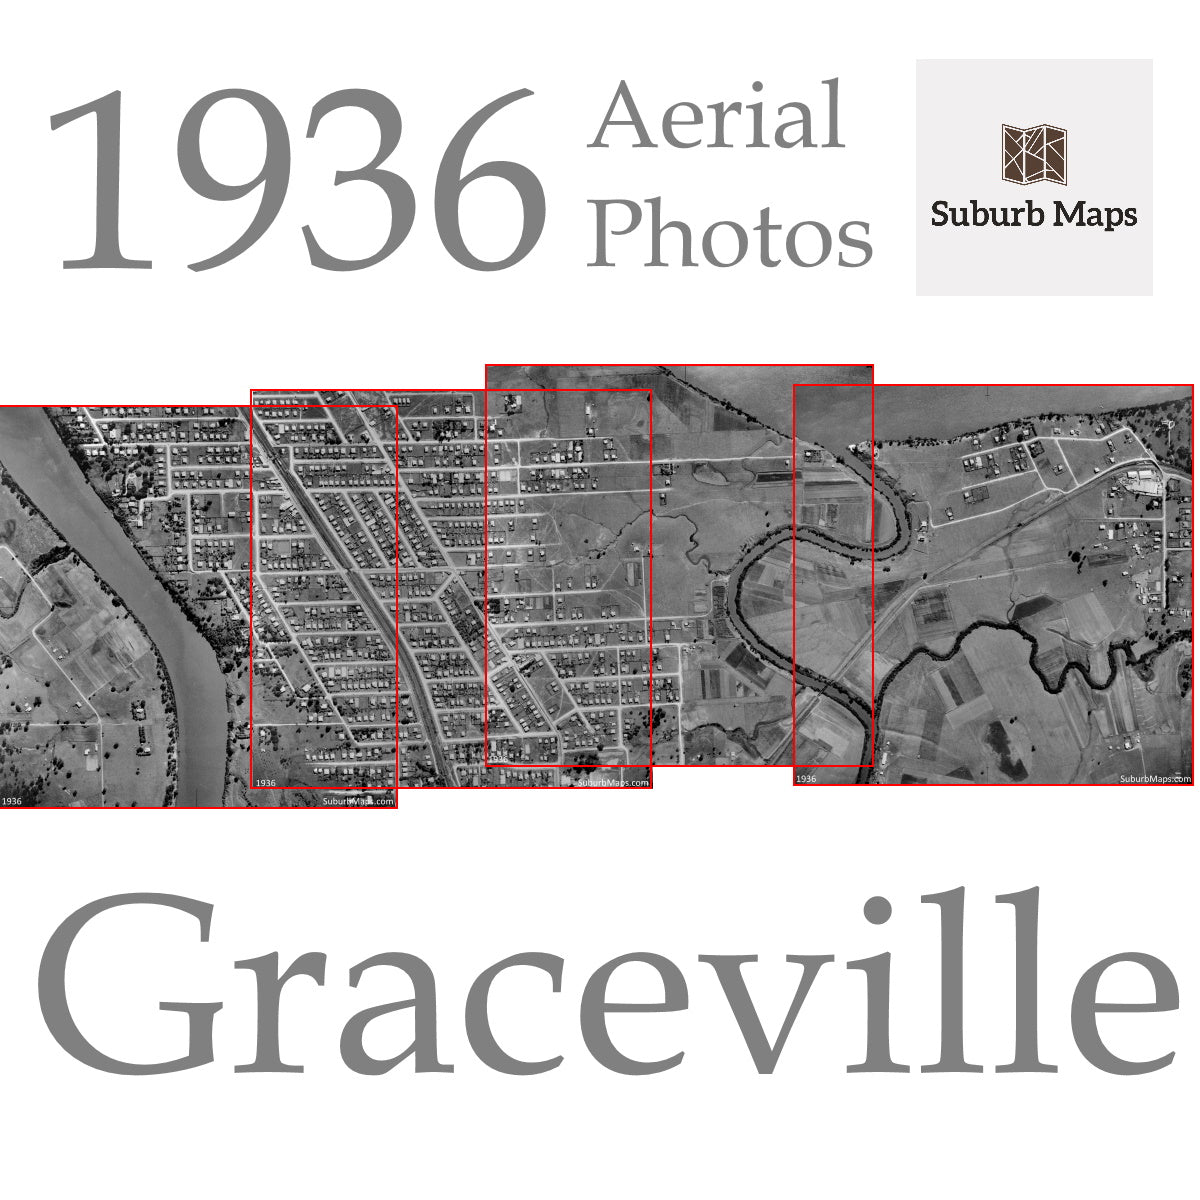 1936 Aerial Photos - Graceville